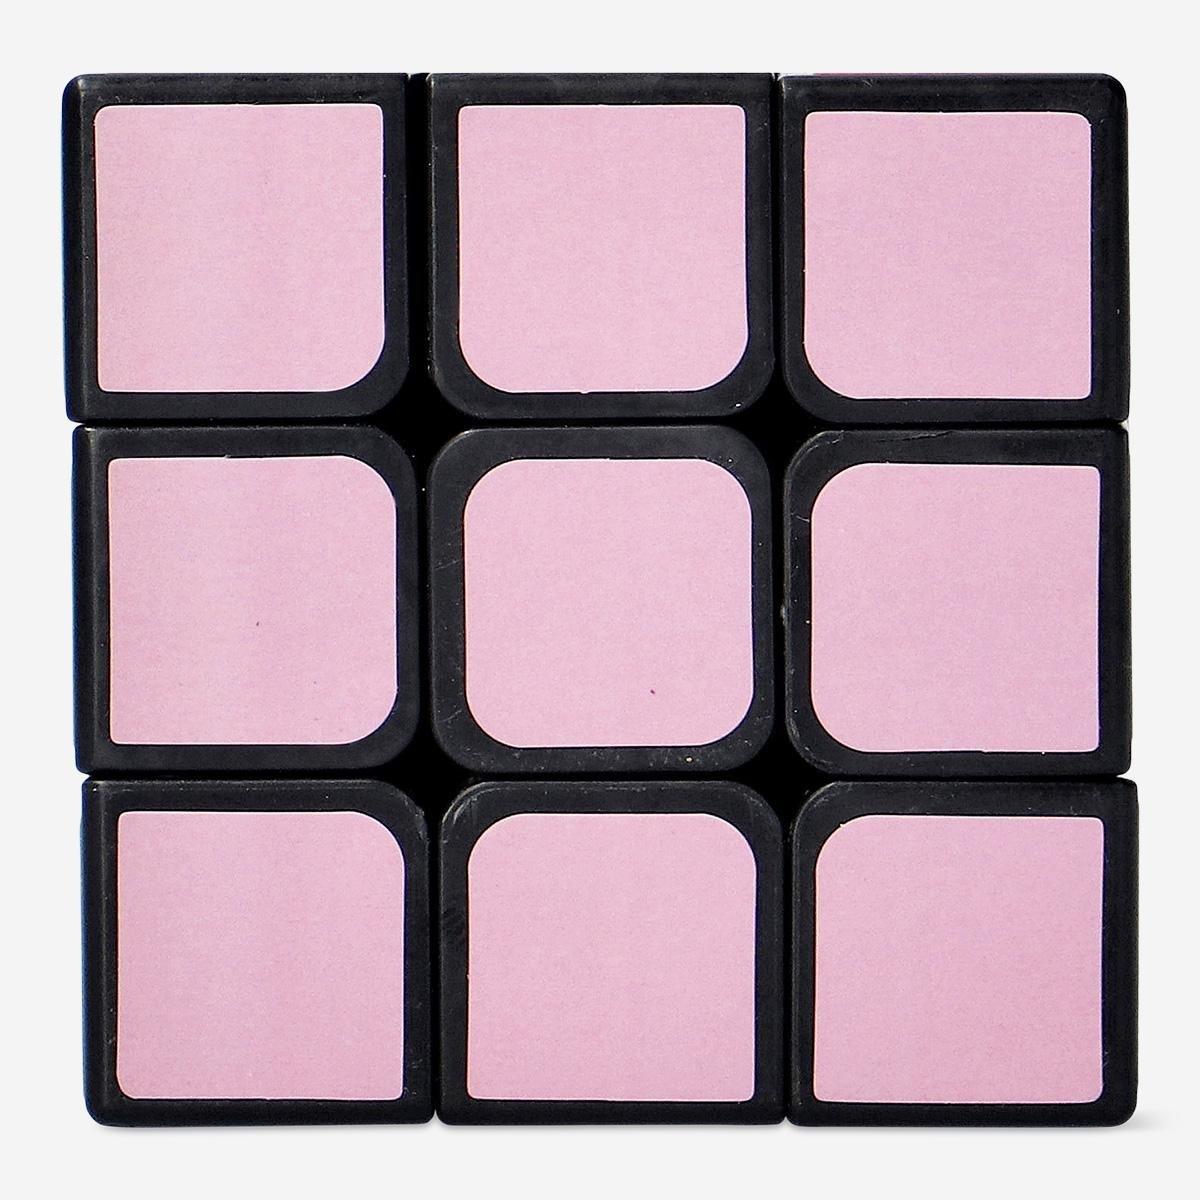 Multicolour IQ cube